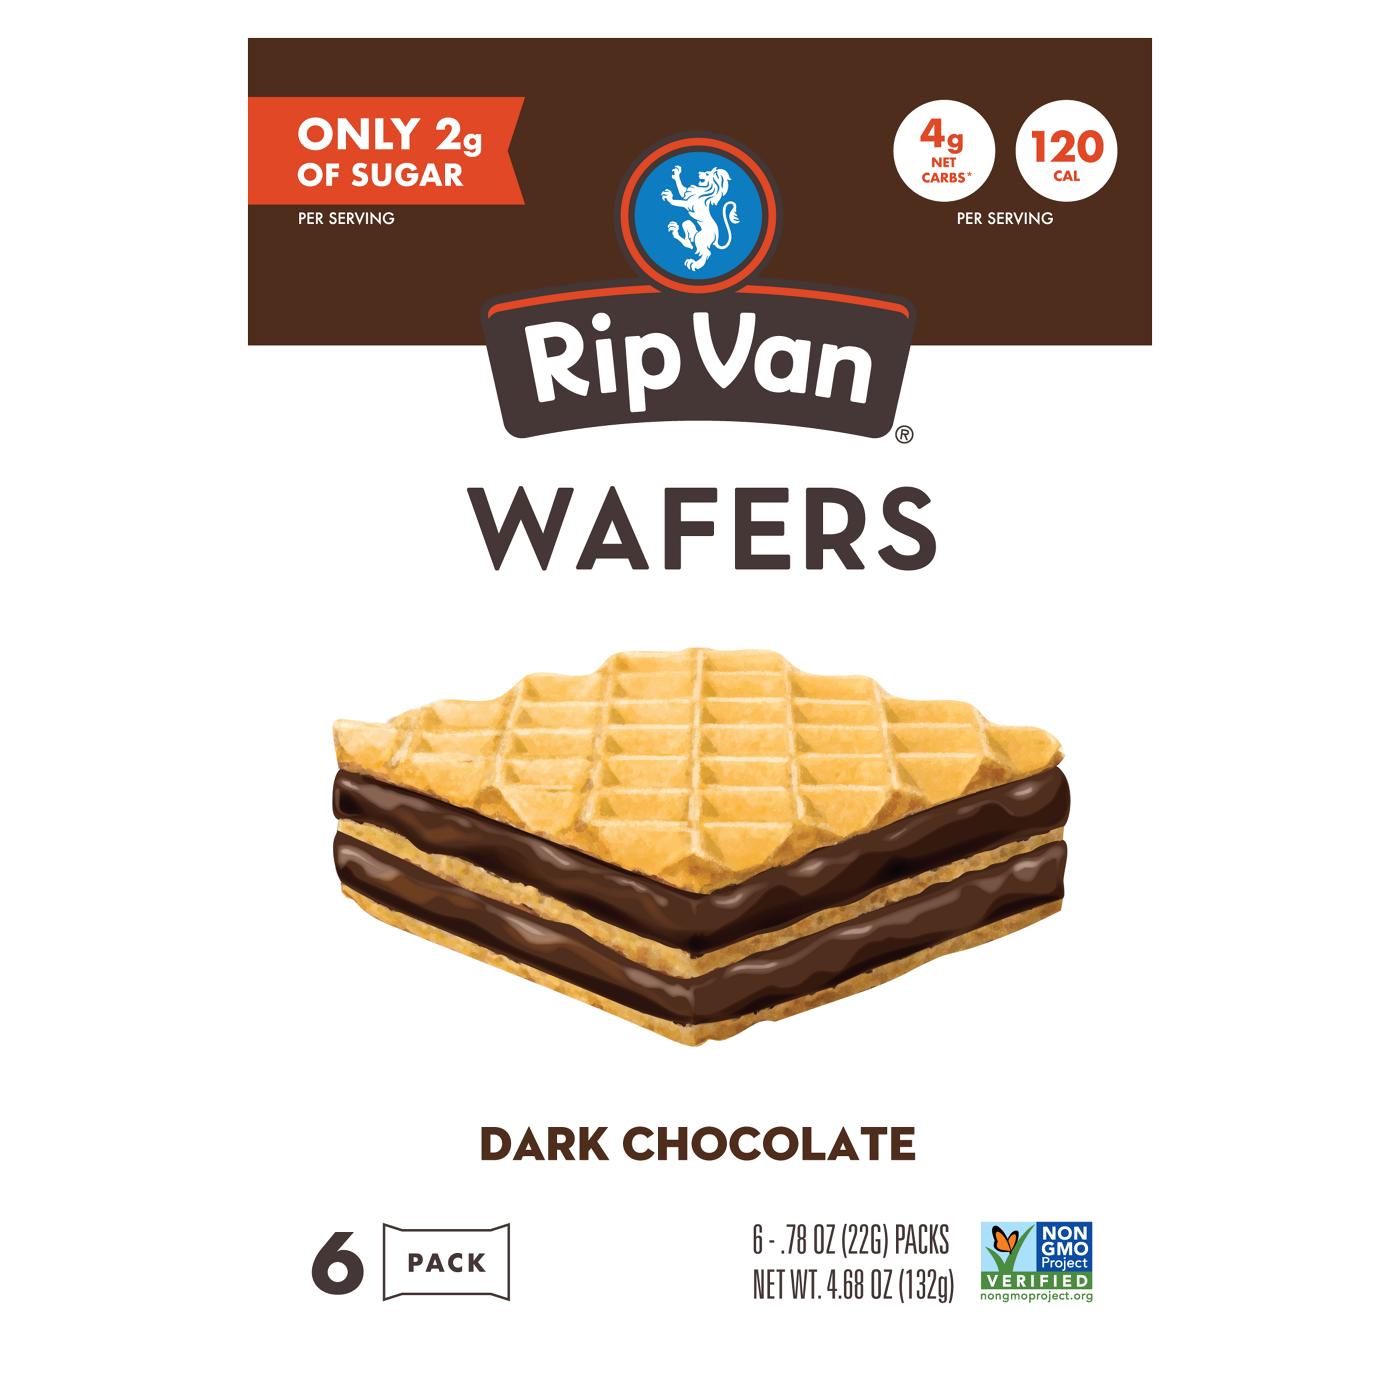 Rip Van Cookie Wafers Dark Chocolate; image 1 of 2